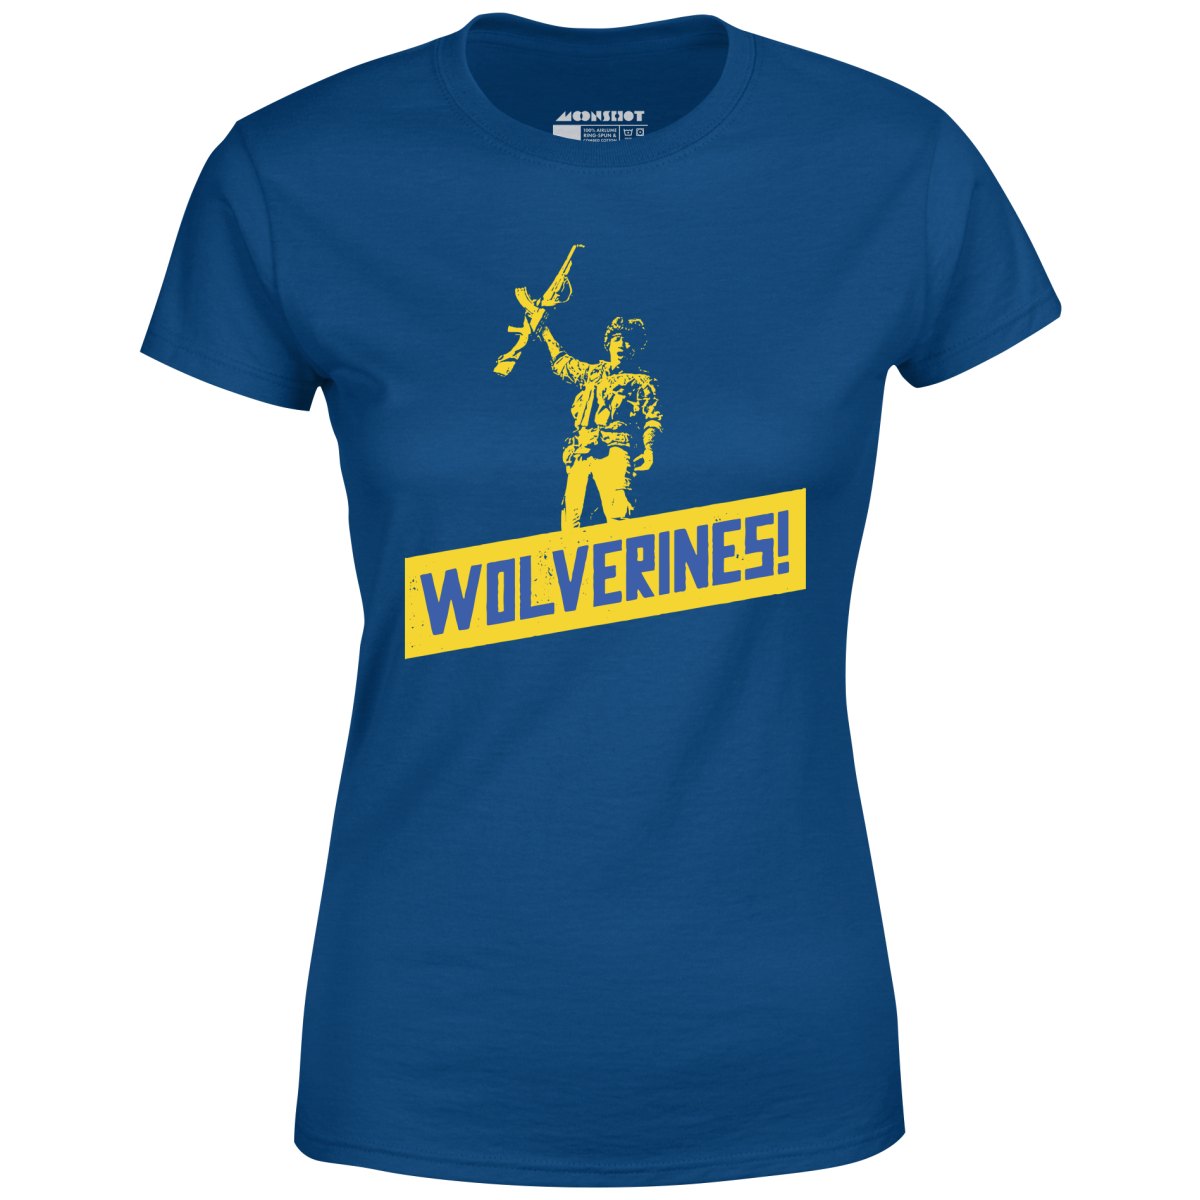 Wolverines Support Ukraine - Women's T-Shirt